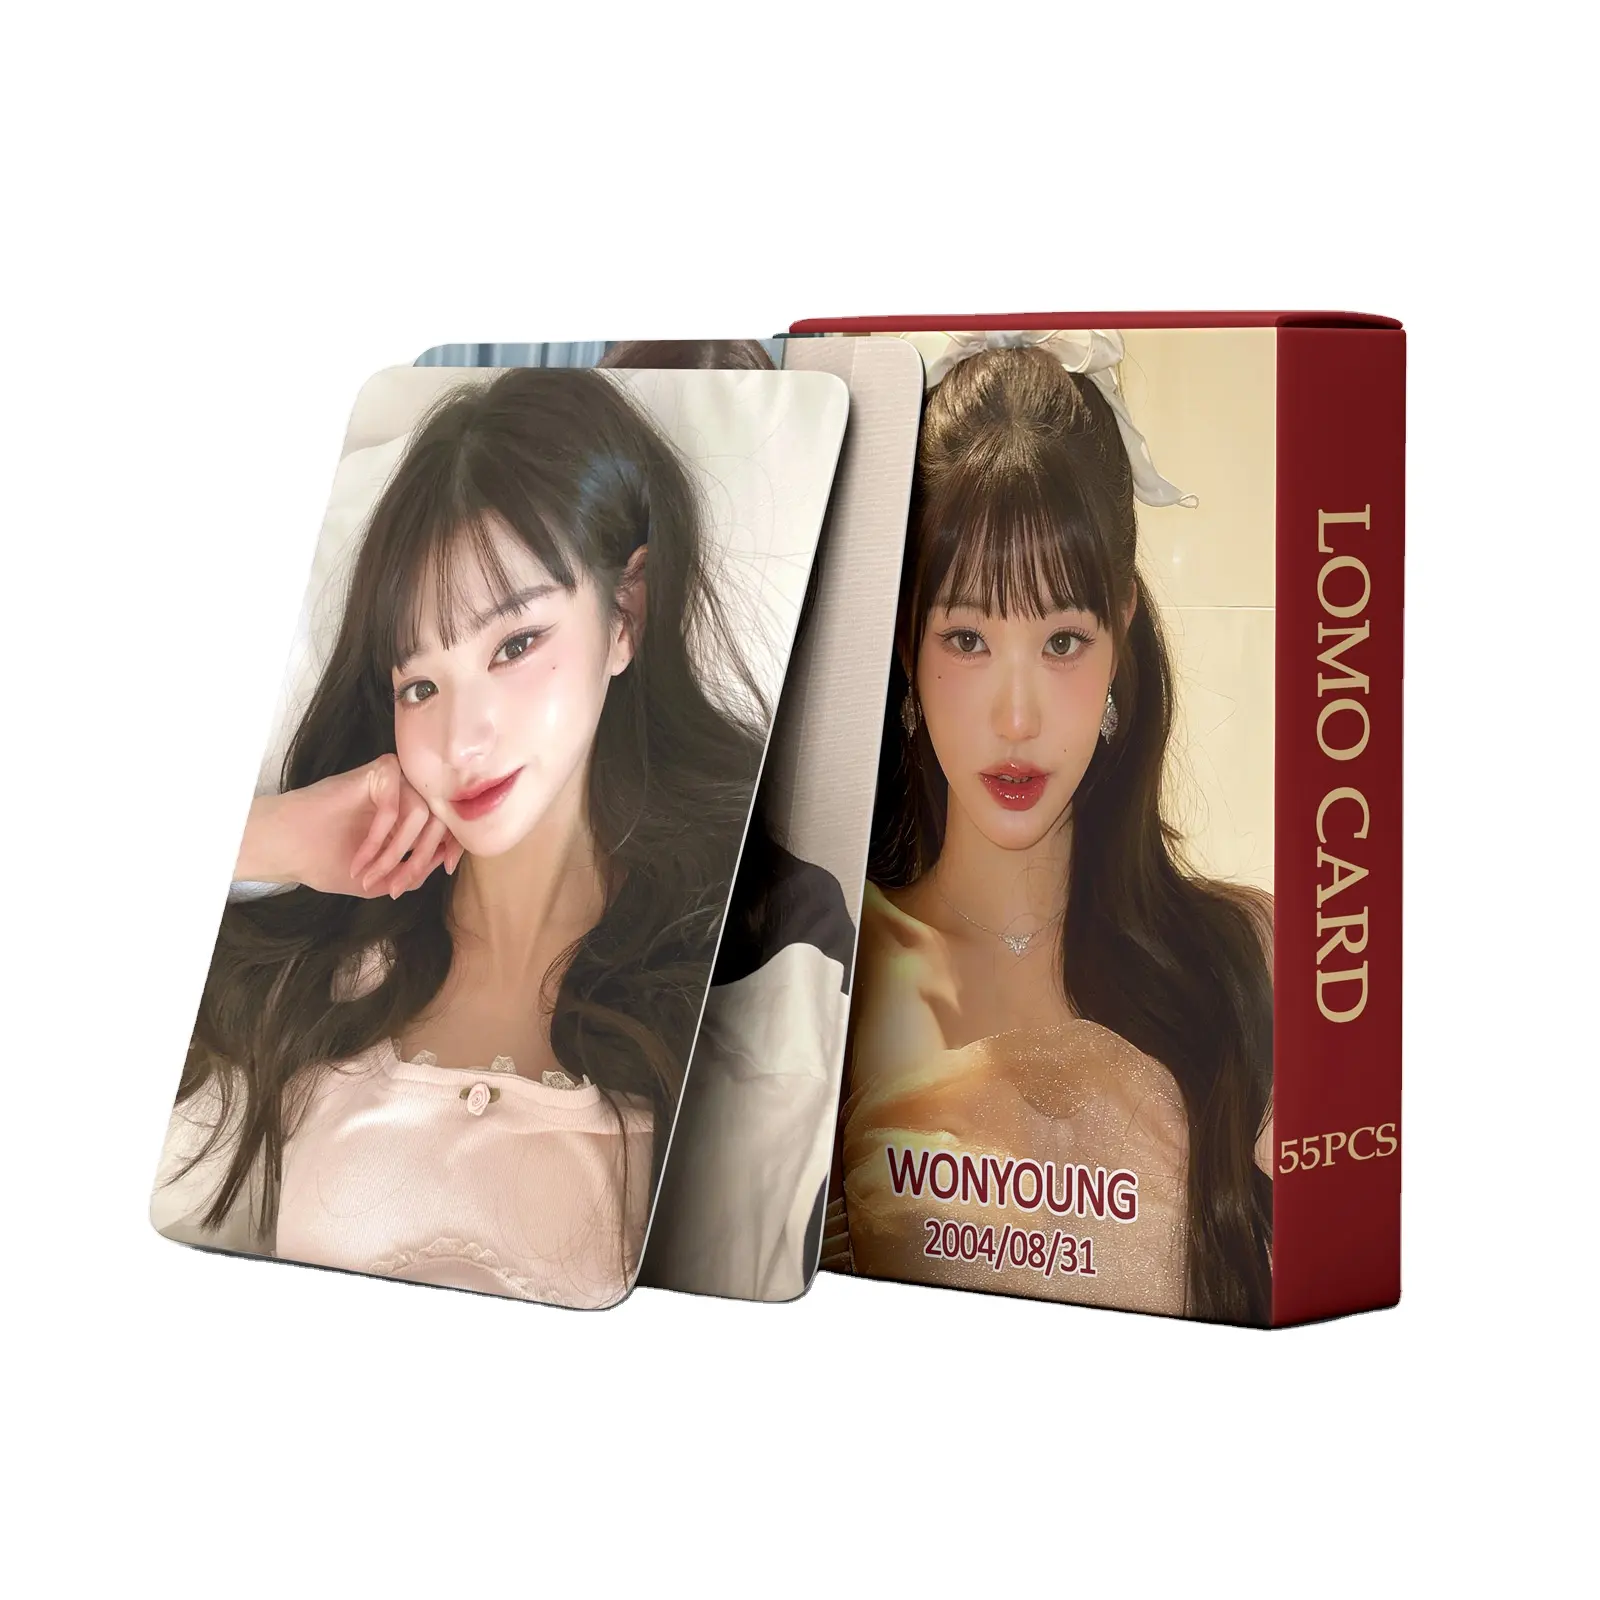 Kpop Jang Won Young Photo Card 55 unids/caja Lomo Card Kpop photocard para regalo papel artesanal Tarjeta de papel